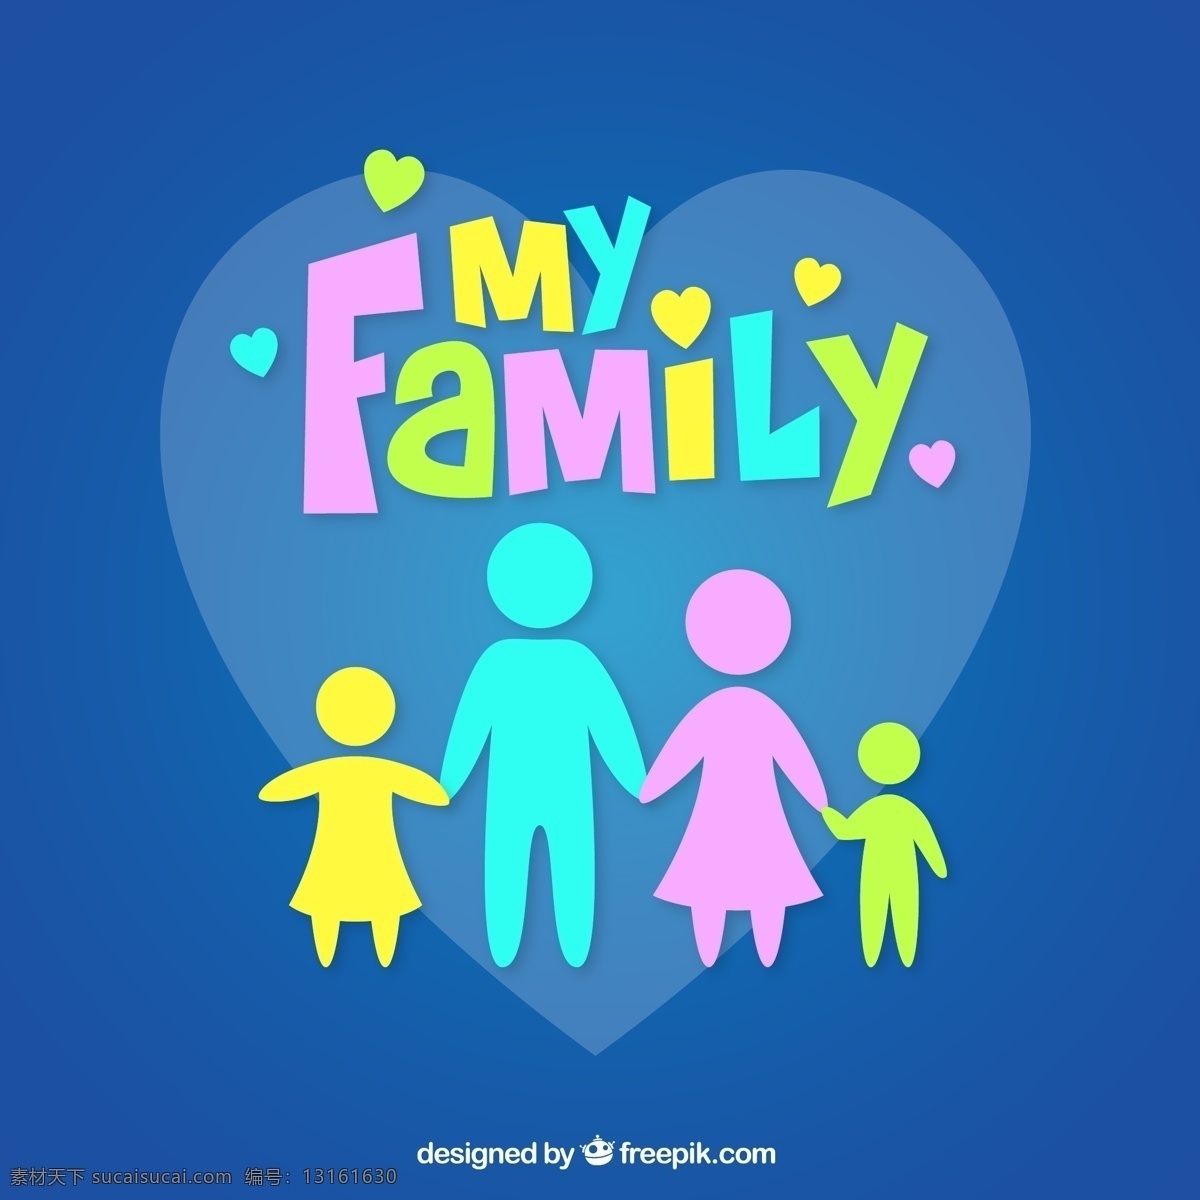 我的家人矢量 爱心 家 孩子 父母 人物 家庭 牵手 my family 矢量图 ai格式 蓝色